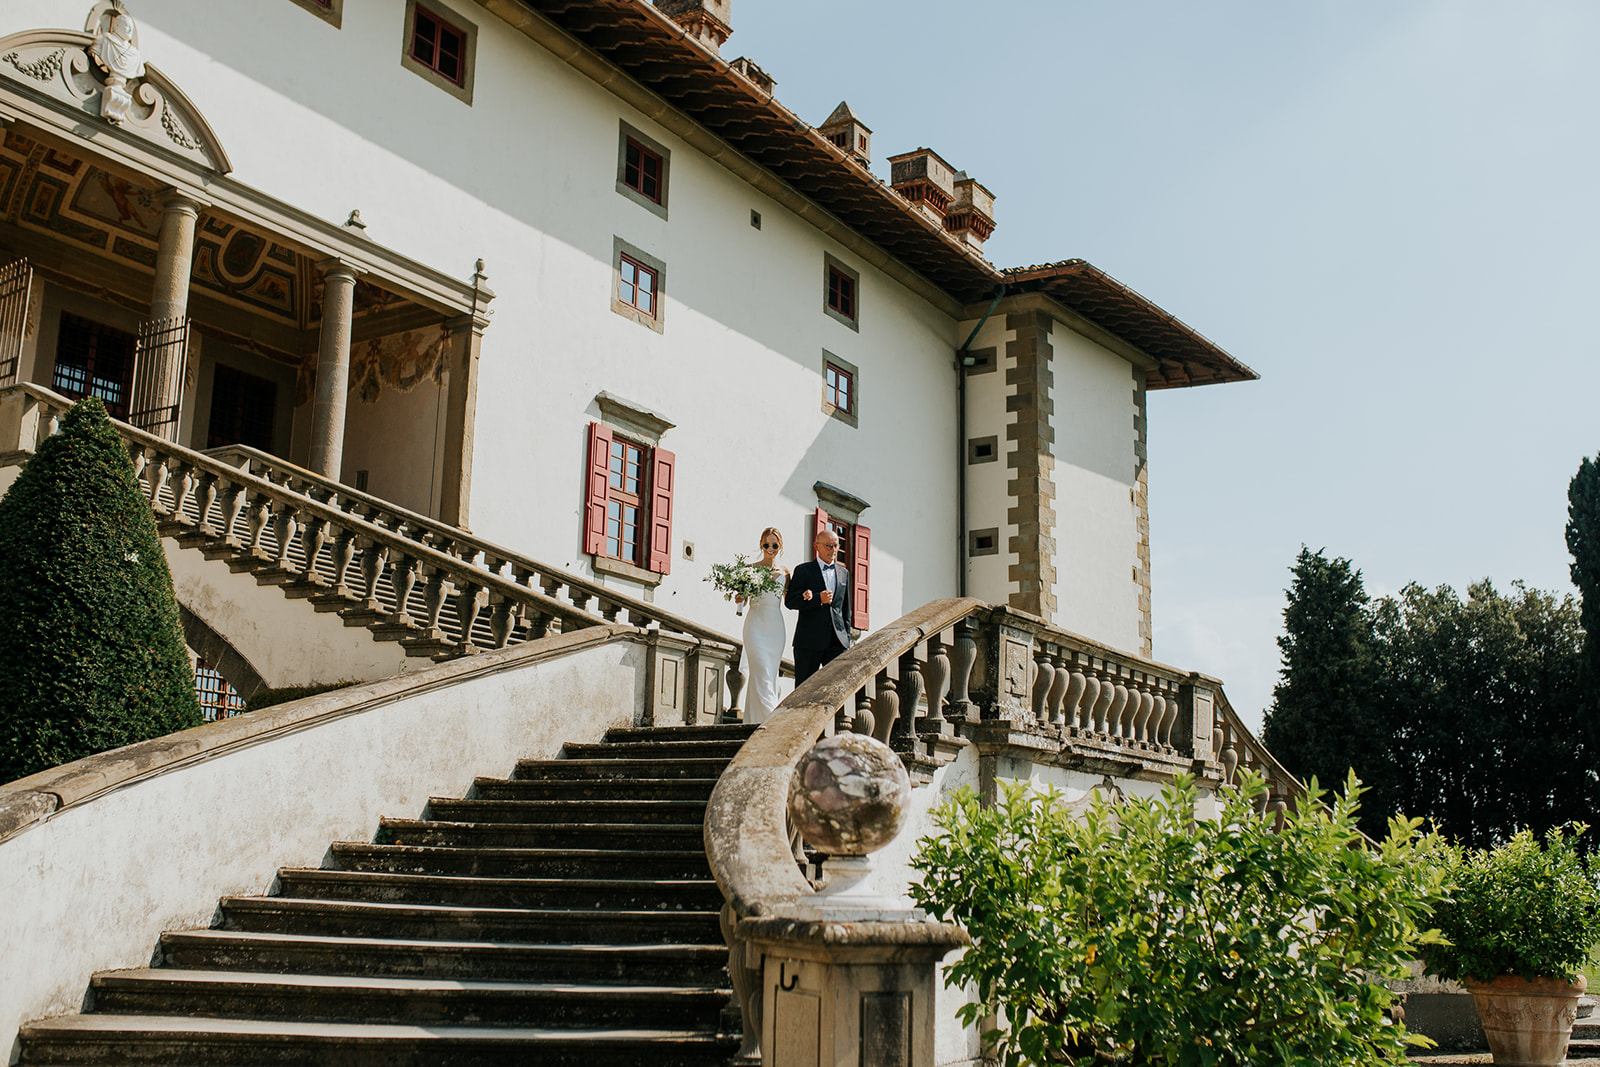 Ślub w Toskanii 